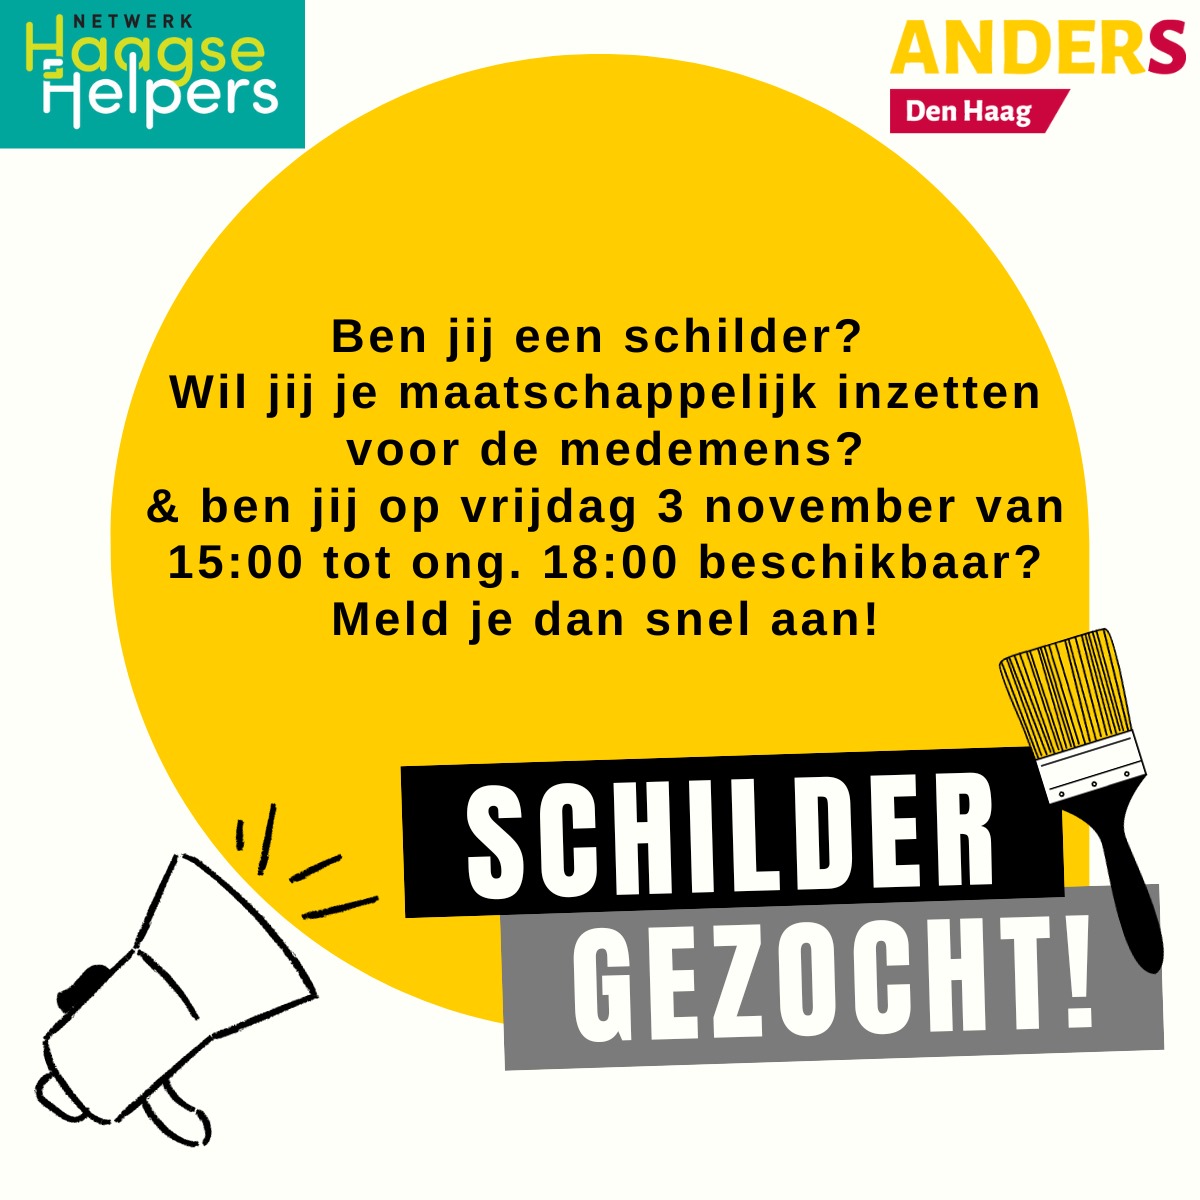 Haagse Helpers en Stichting ANDERS Den Haag